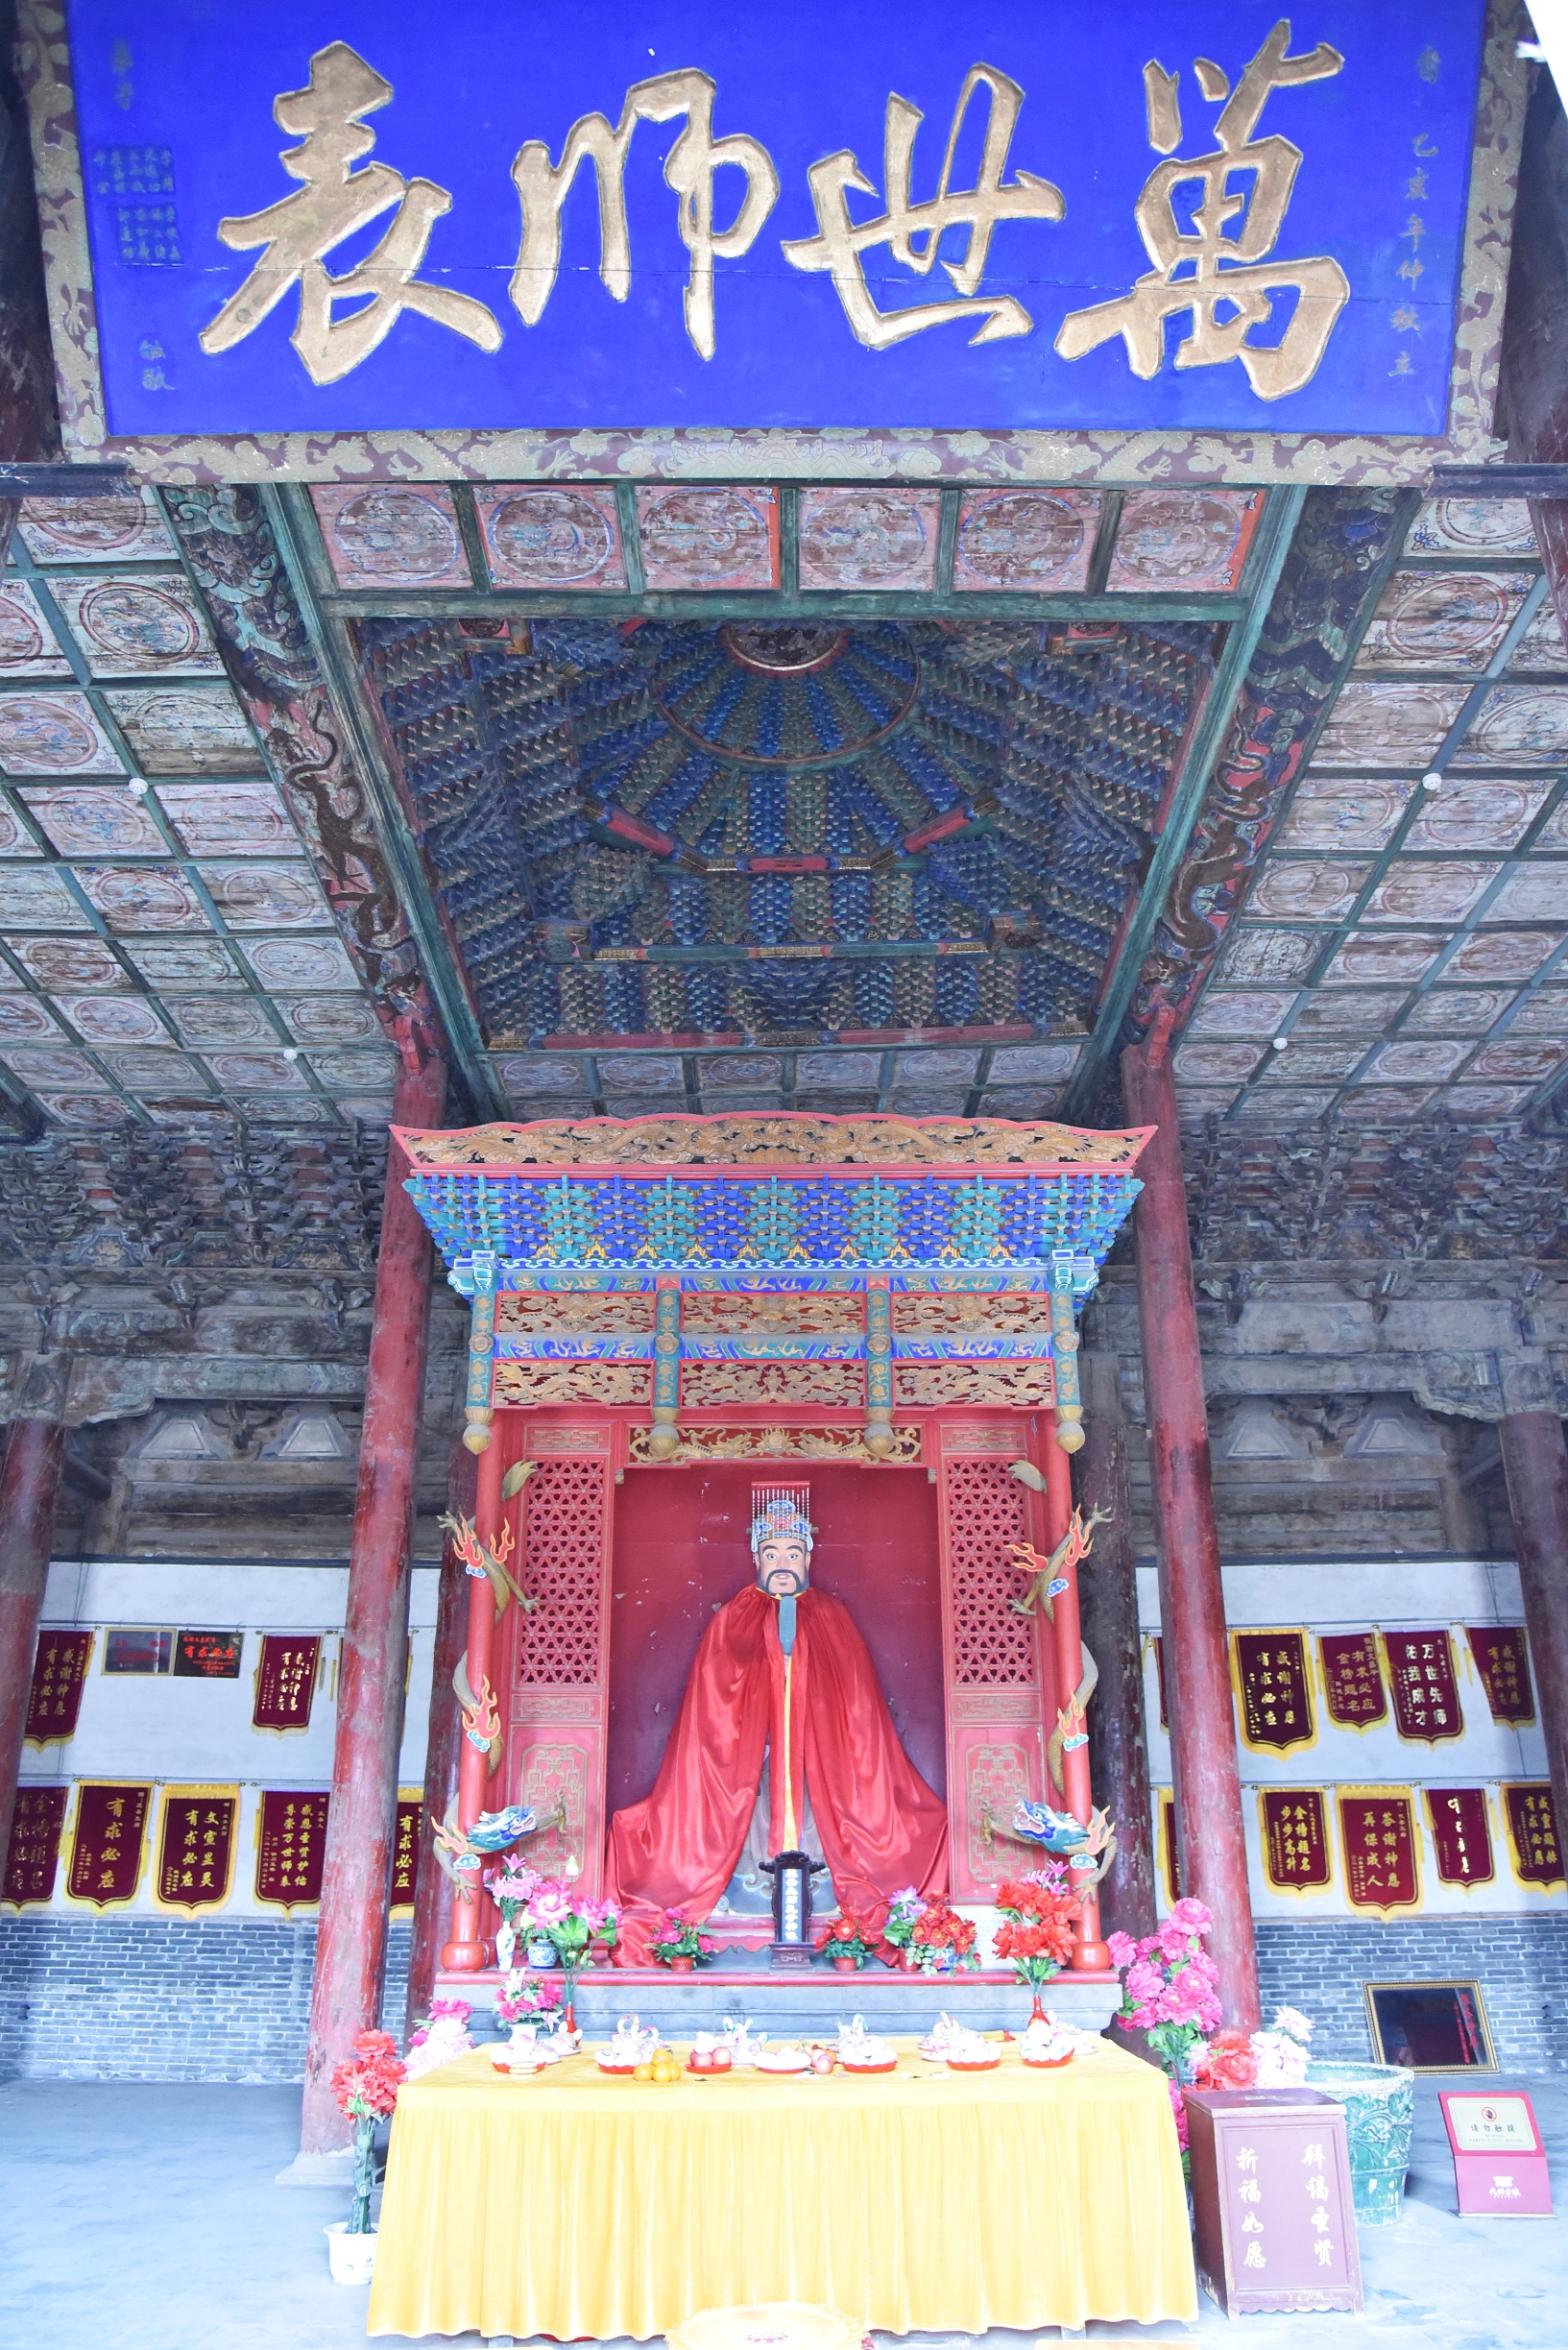 代州文庙，亦称代州孔庙，始建于唐代。它于元至正十八年(1358年)因战事被烧毁。至正二十七年(136